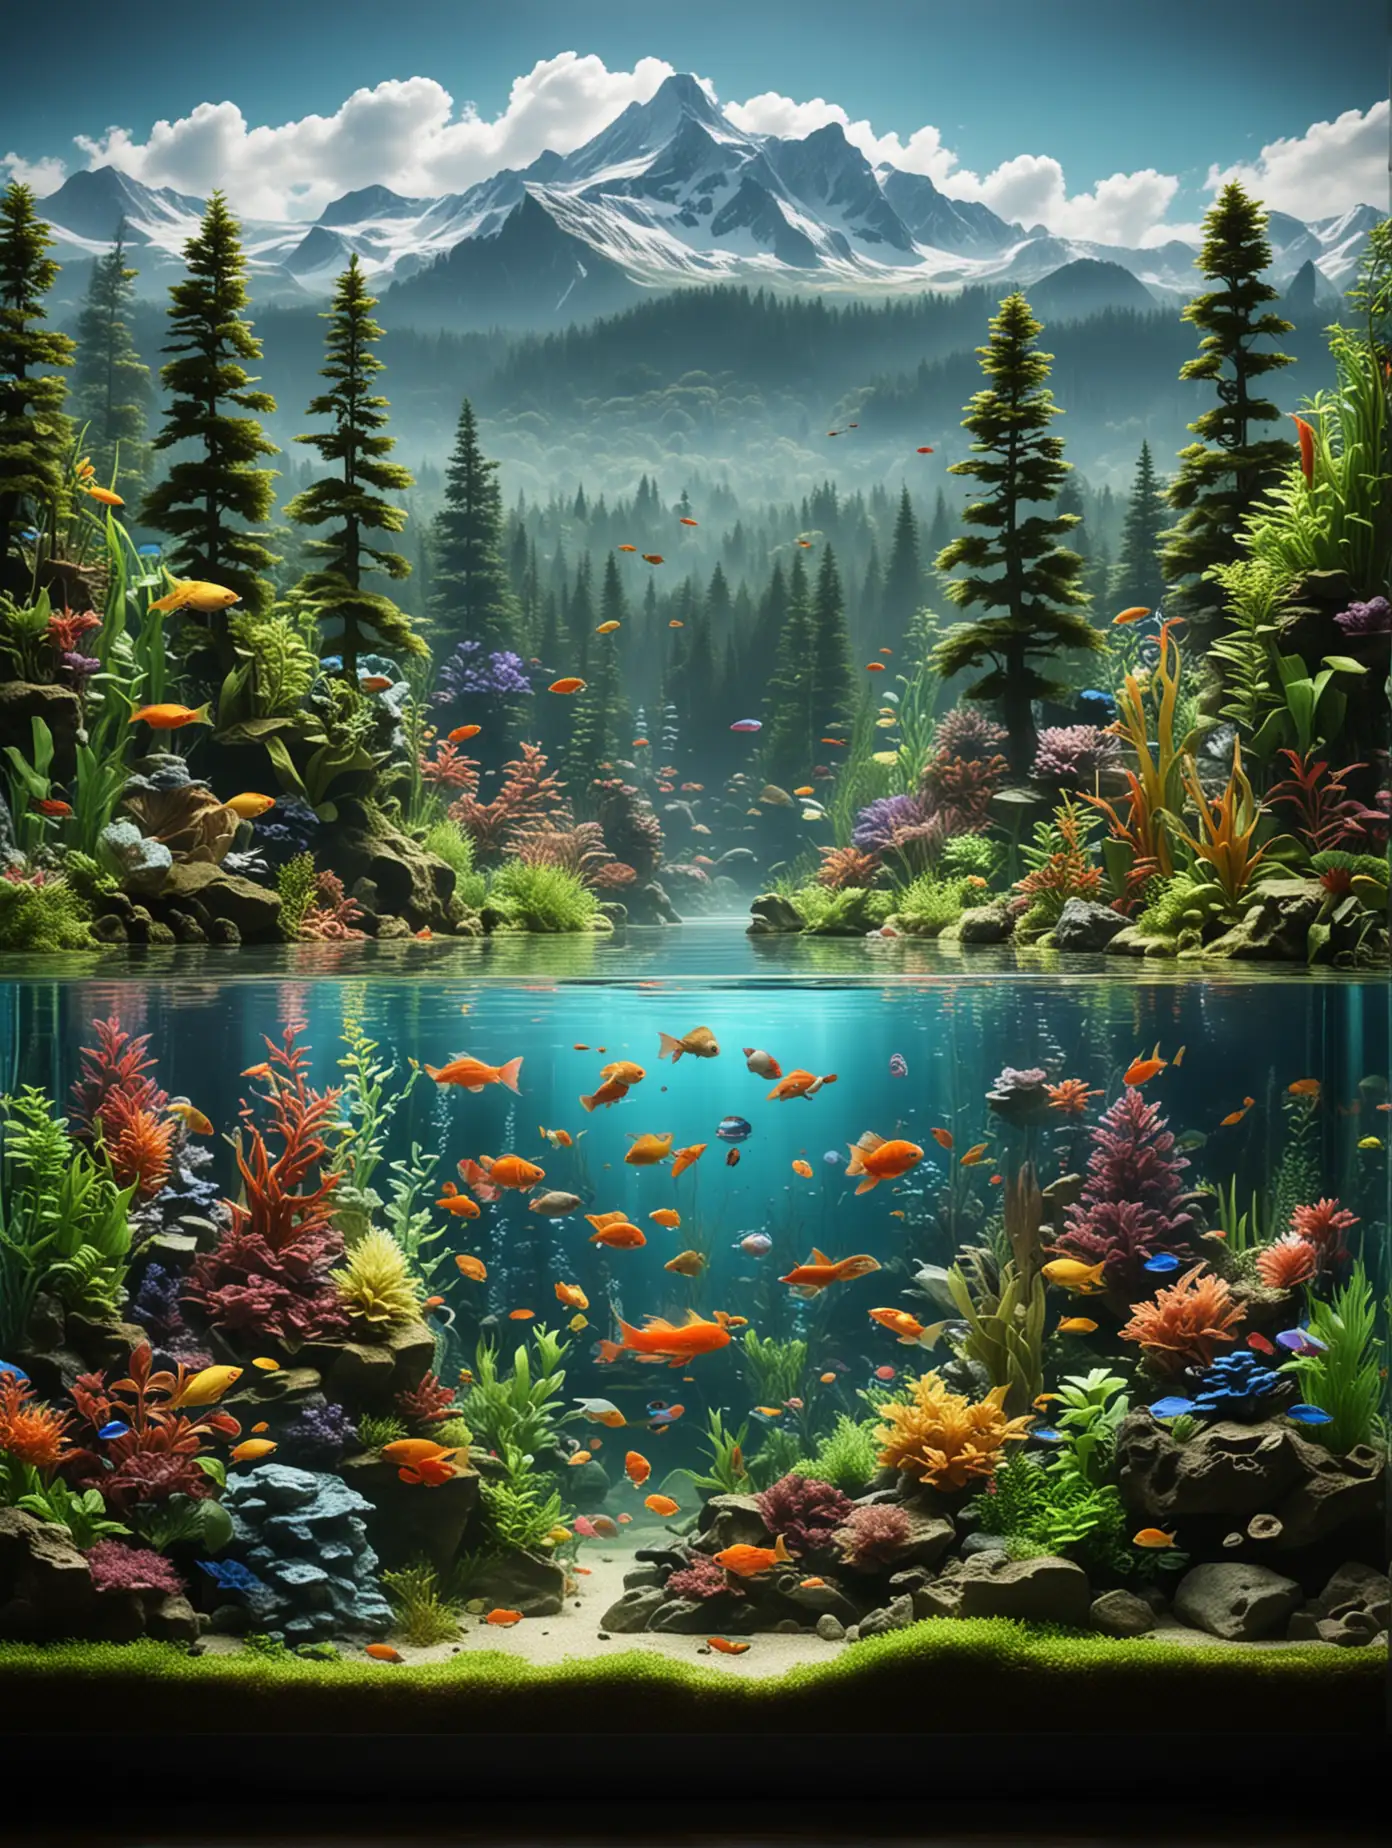 生成一个生态鱼缸的图片，里面有各种颜色的鱼，有森林，有山峰也在鱼缸中，鱼缸是一个长方形的
底下是草地